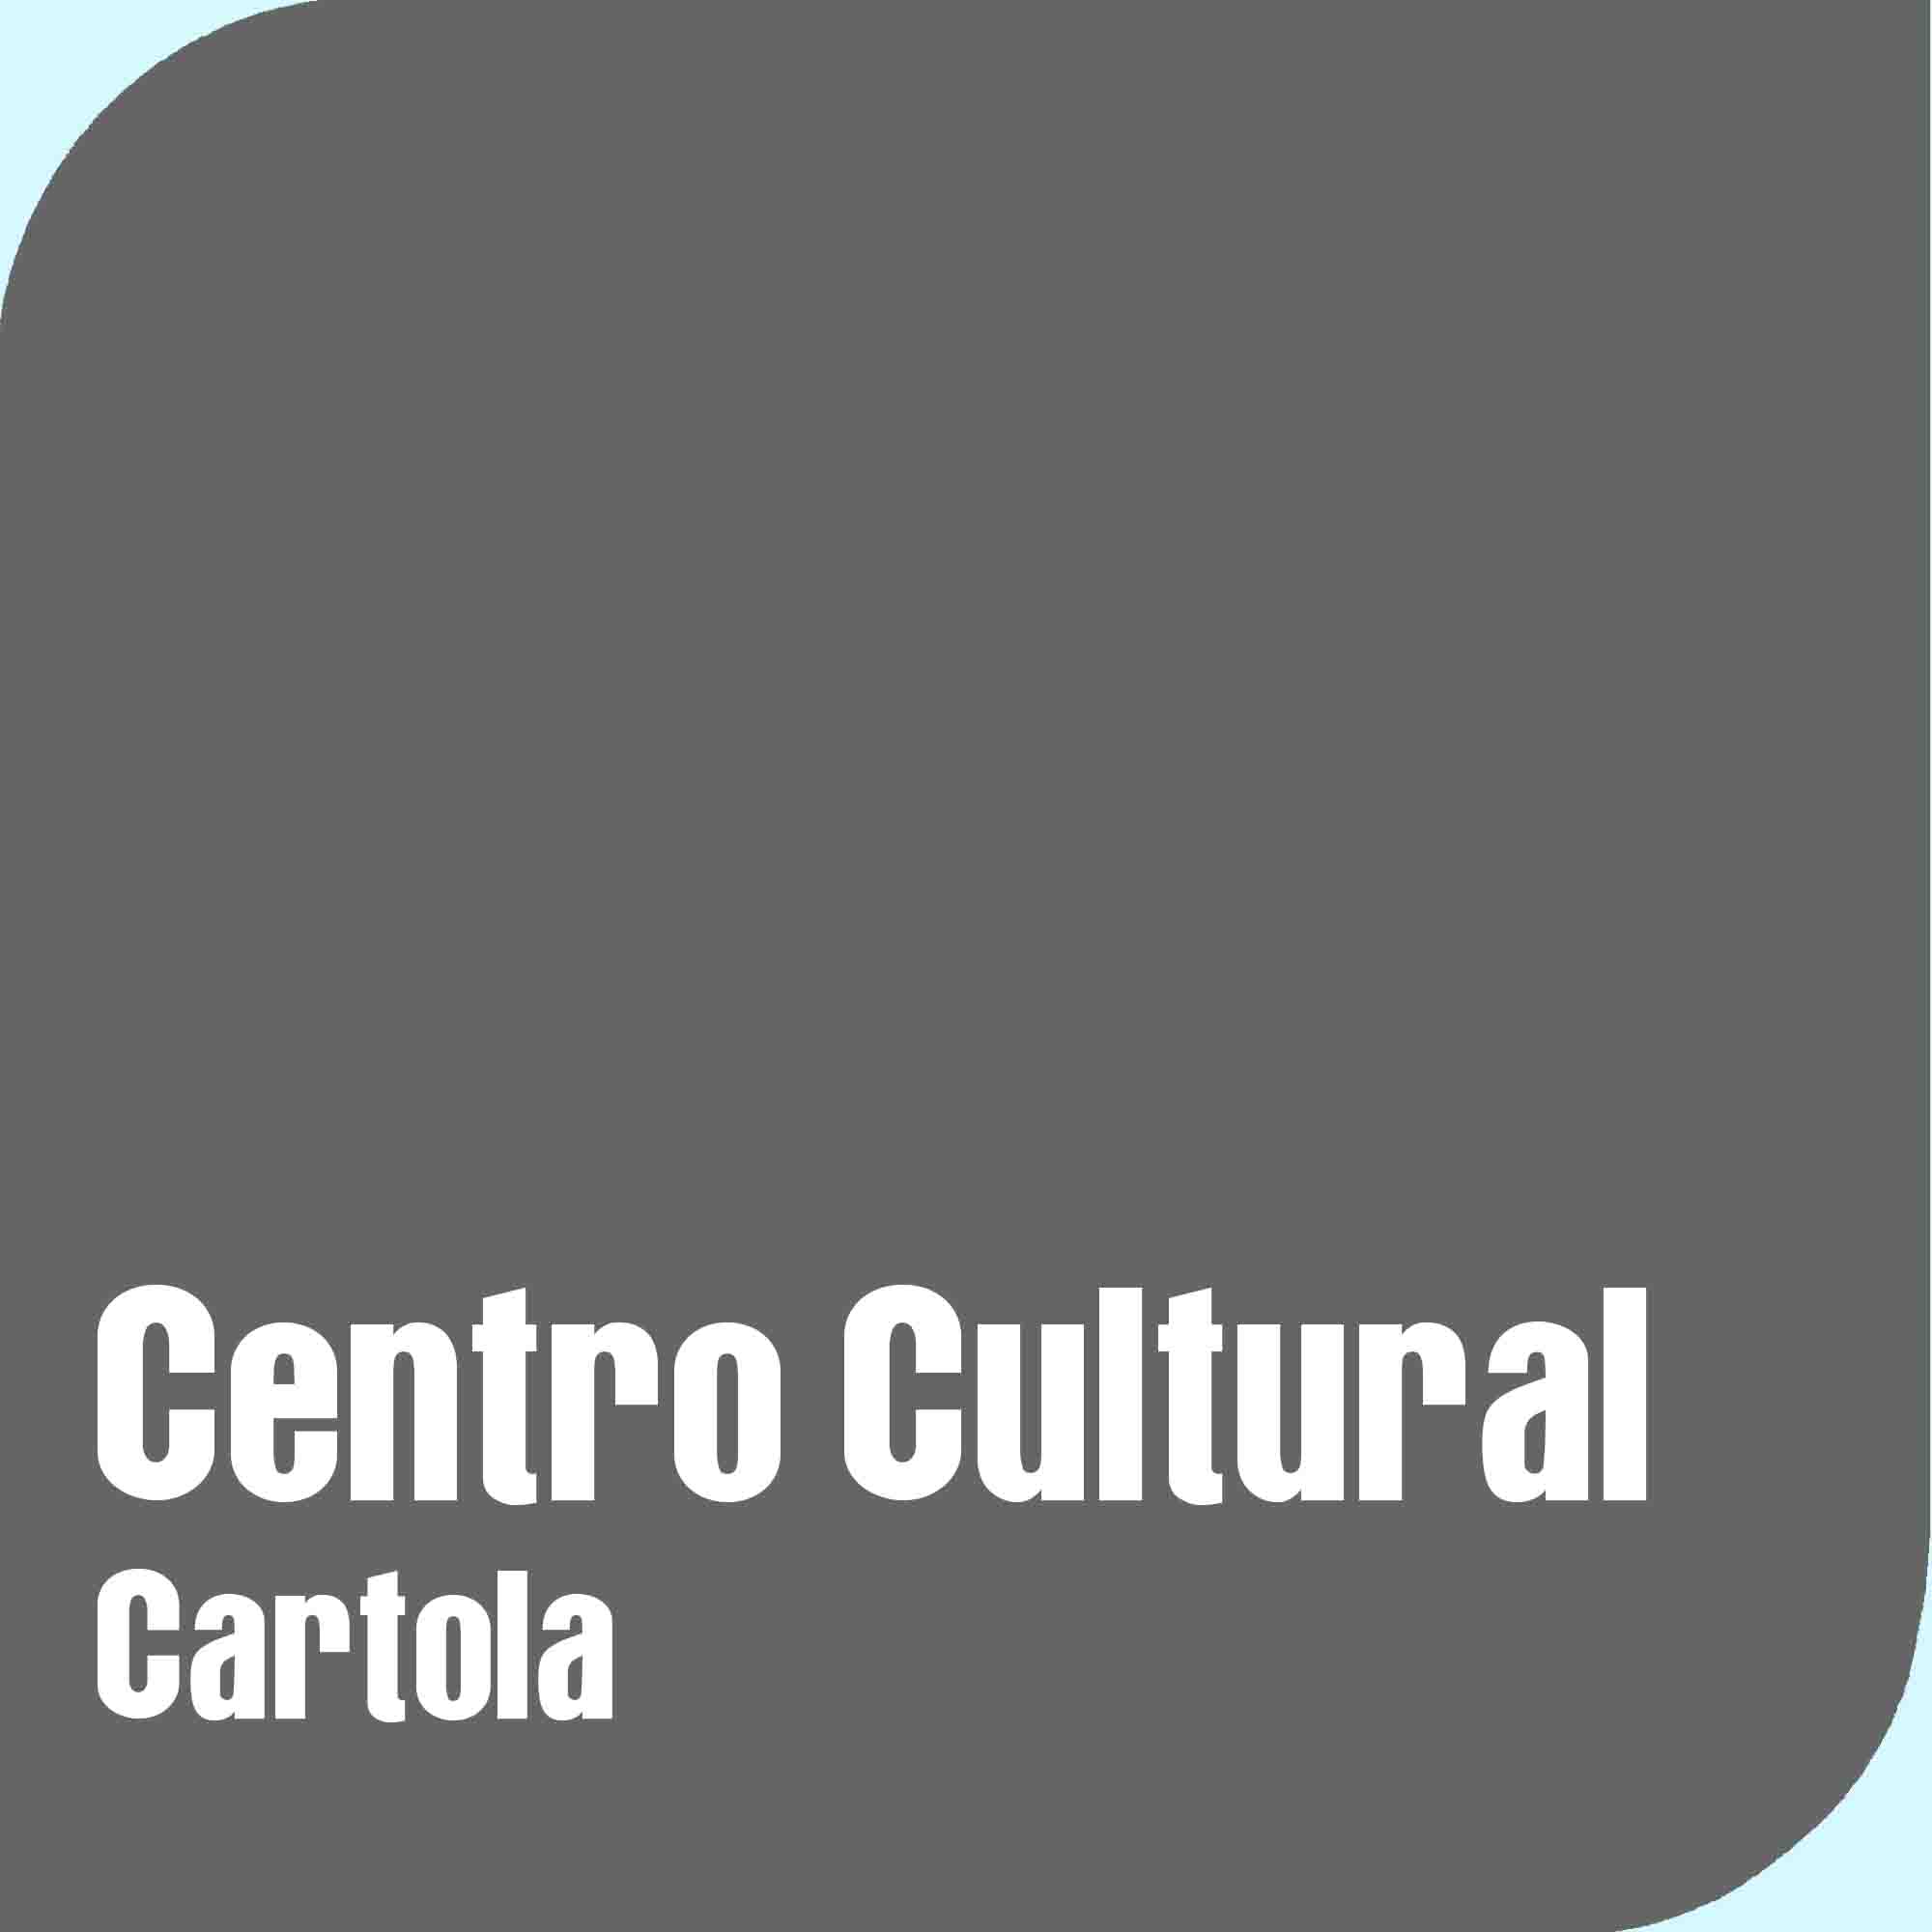 Centro Cultural Cartola